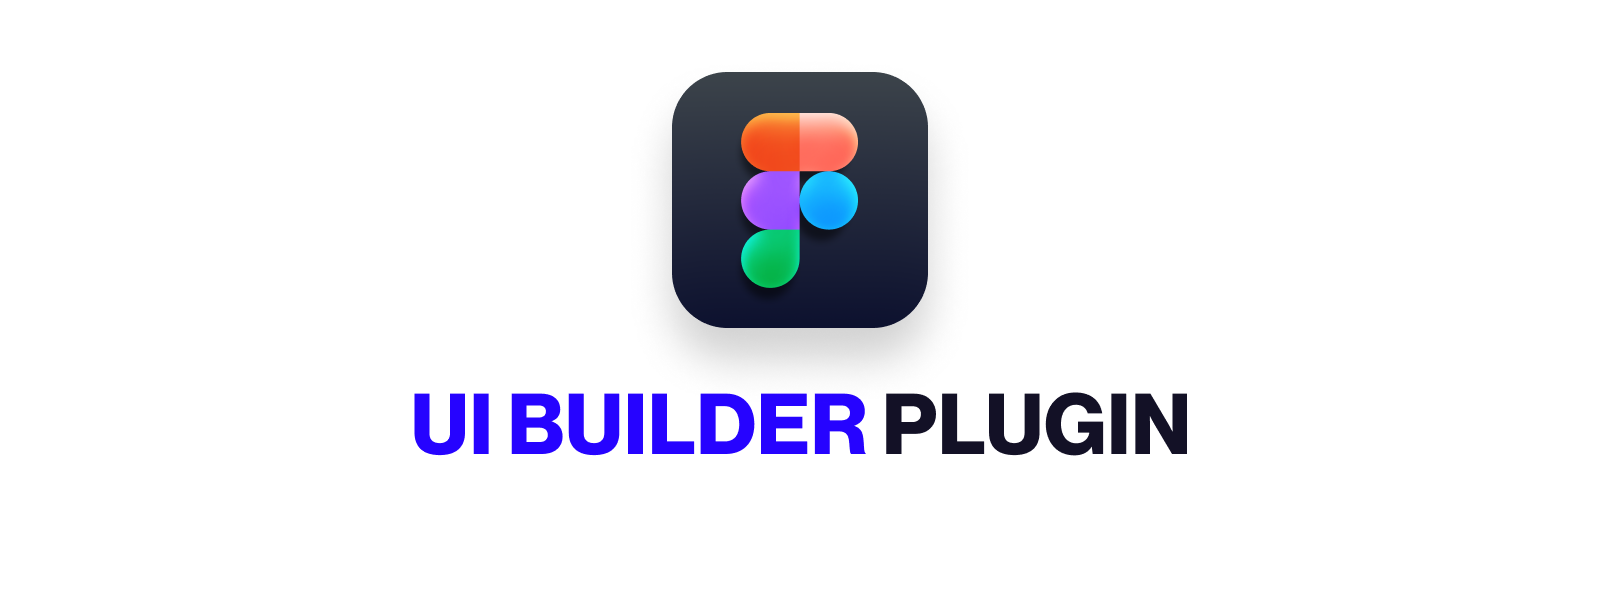 Figma UI Builder Plugin Logo